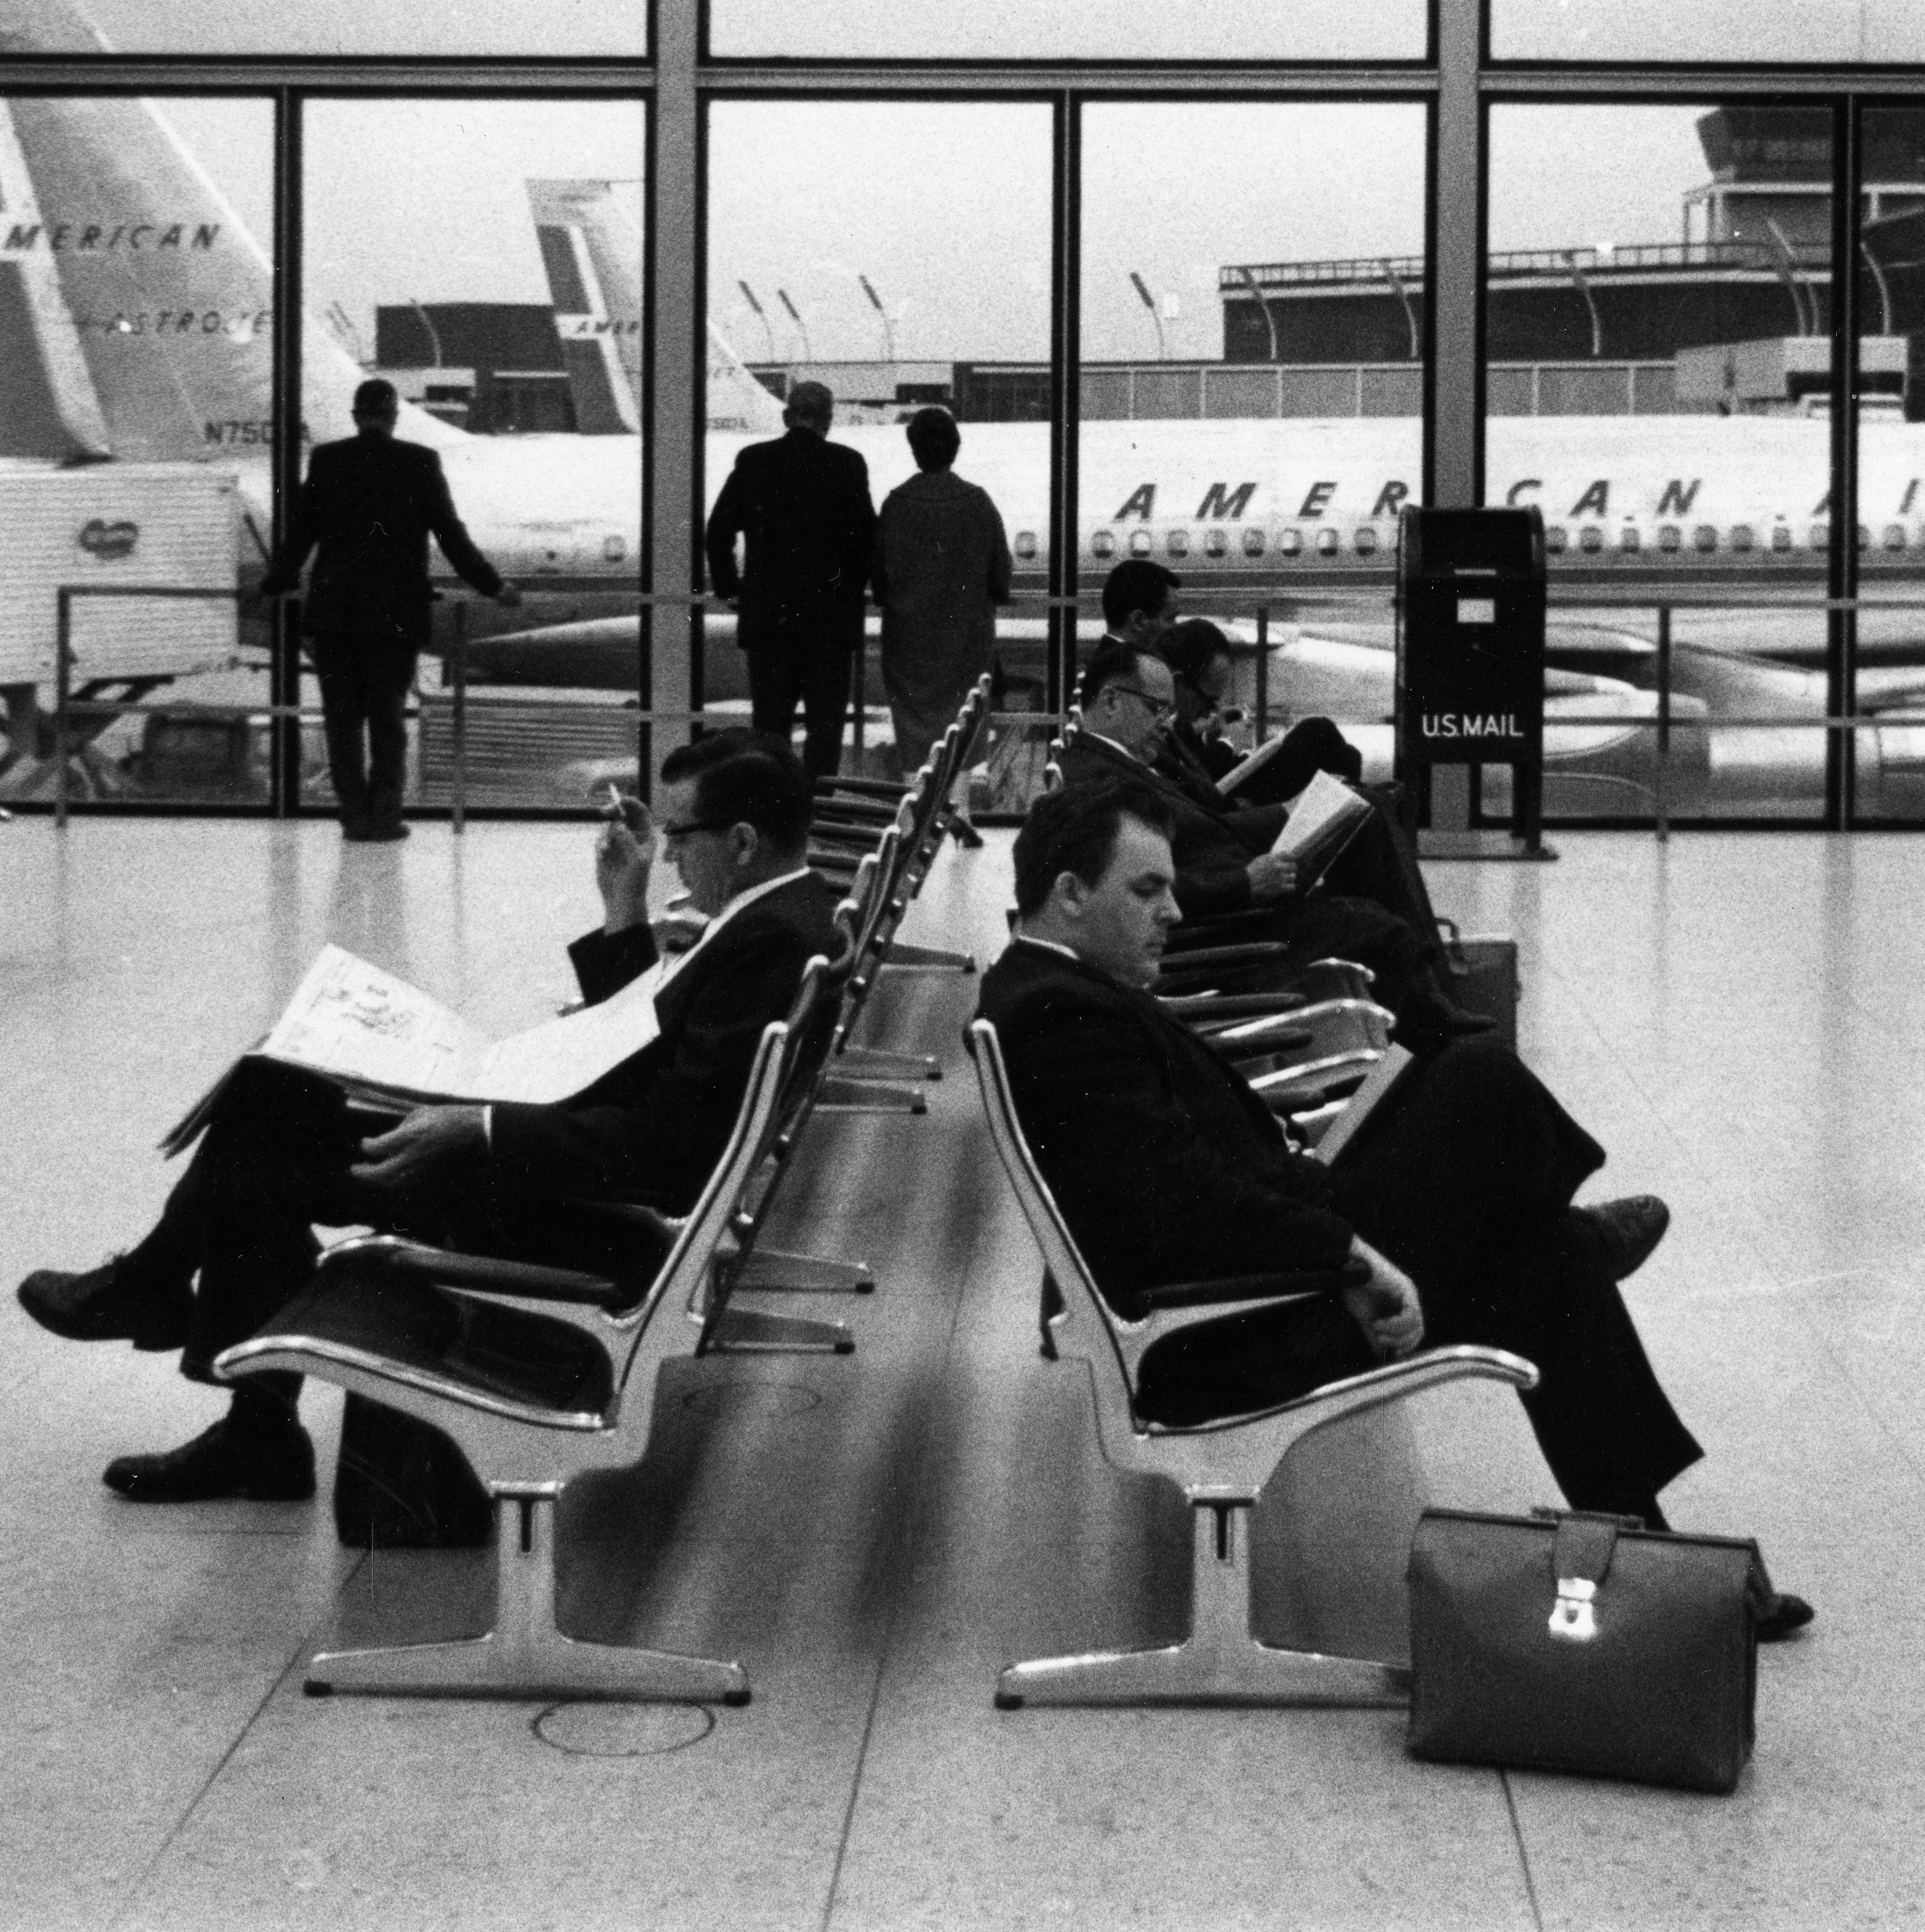 公共座椅|机场椅|办公家具|伊姆斯串联吊索等候排椅